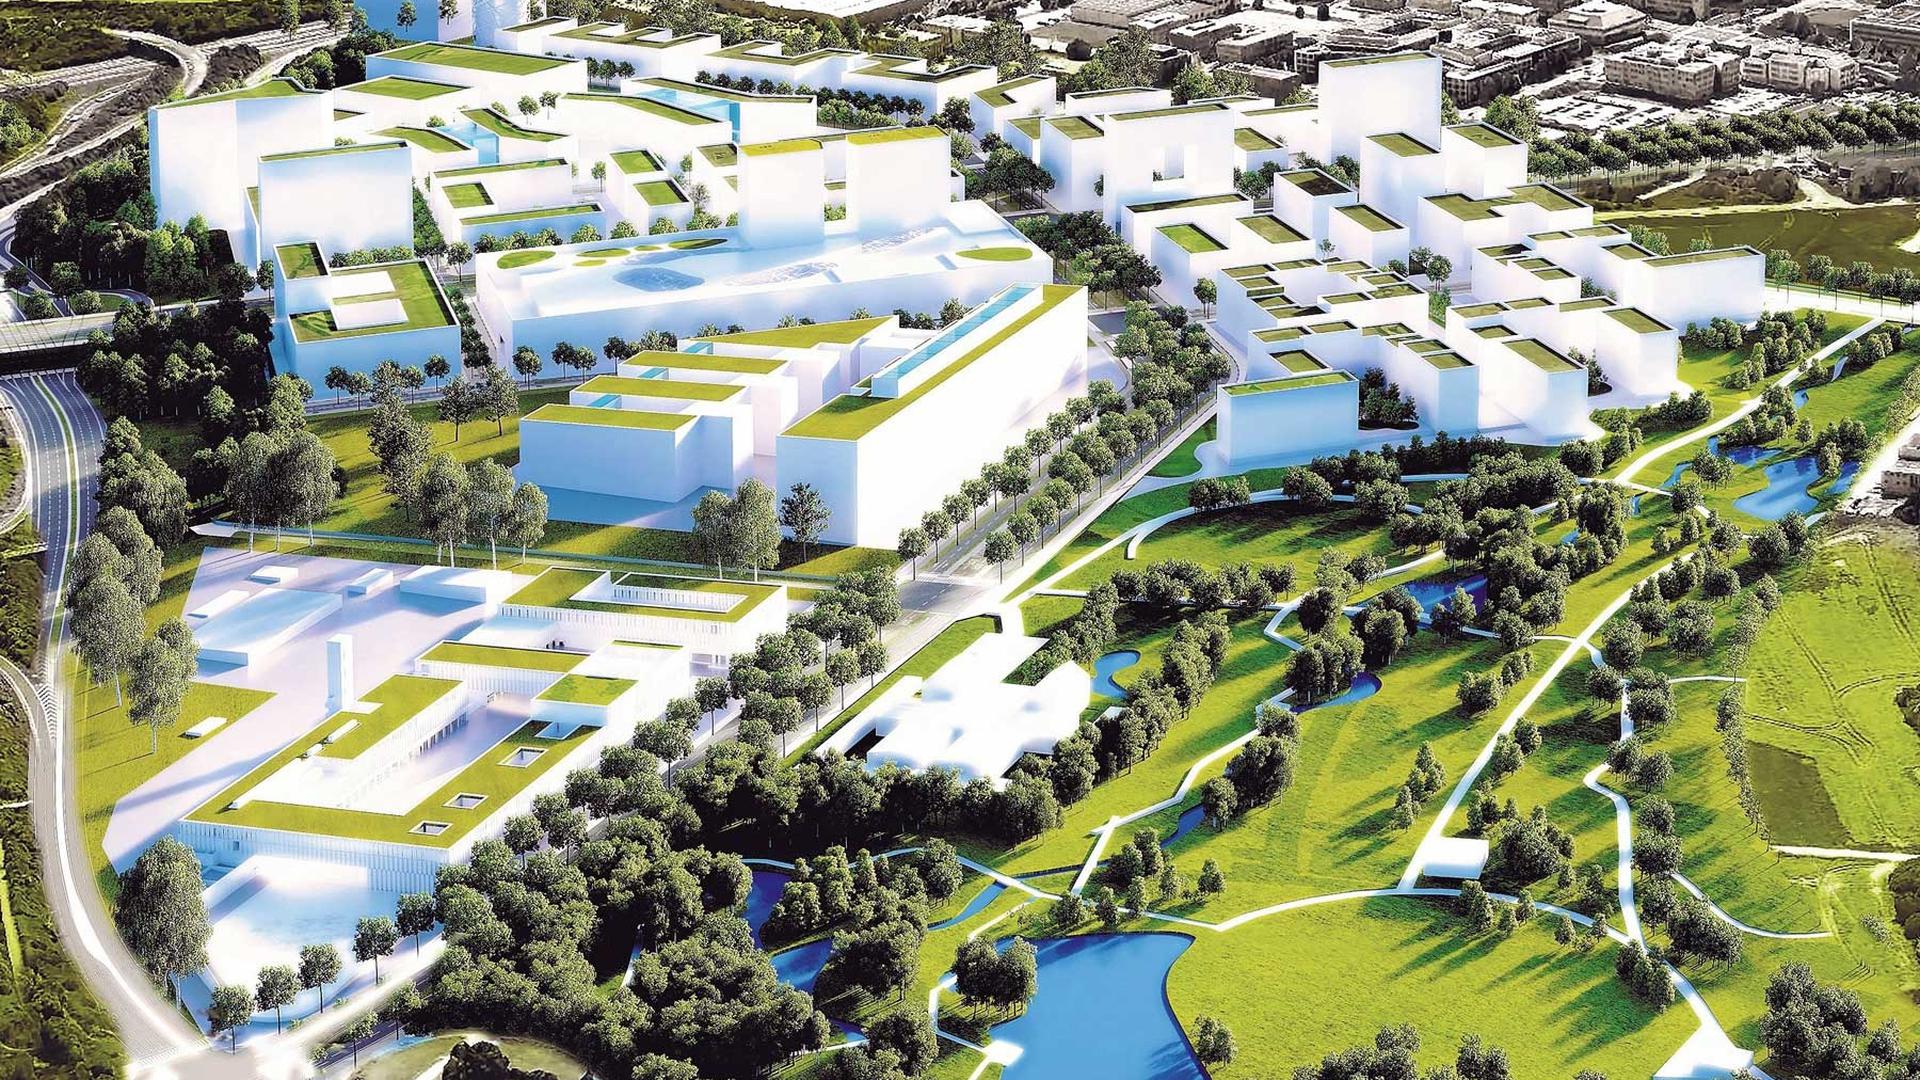 Avec quelque 16 hectares de surface, le futur parc du ban de Gasperich sera le plus grand de la capitale.